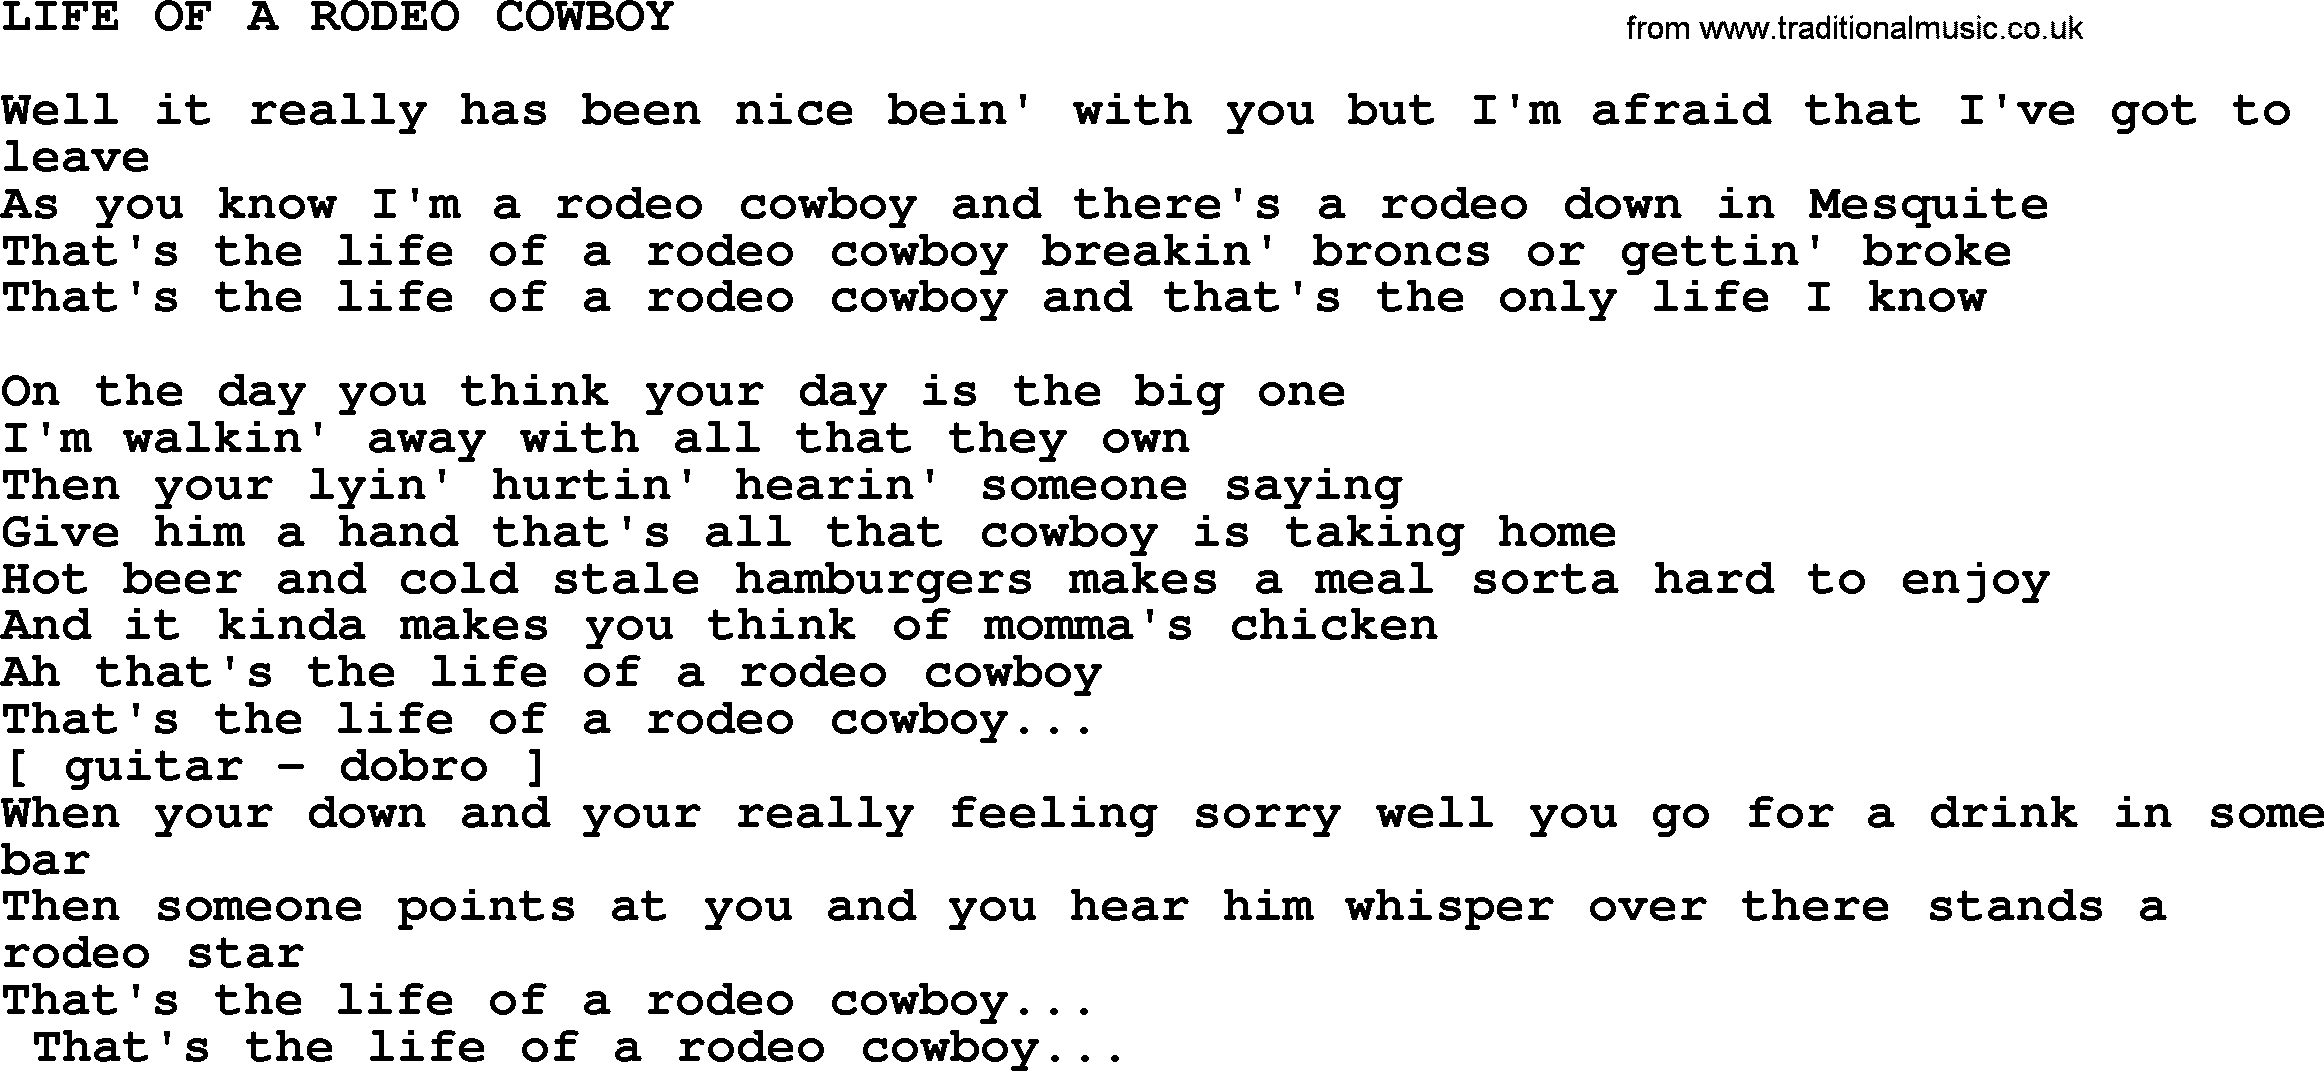 Merle Haggard song: Life Of A Rodeo Cowboy, lyrics.